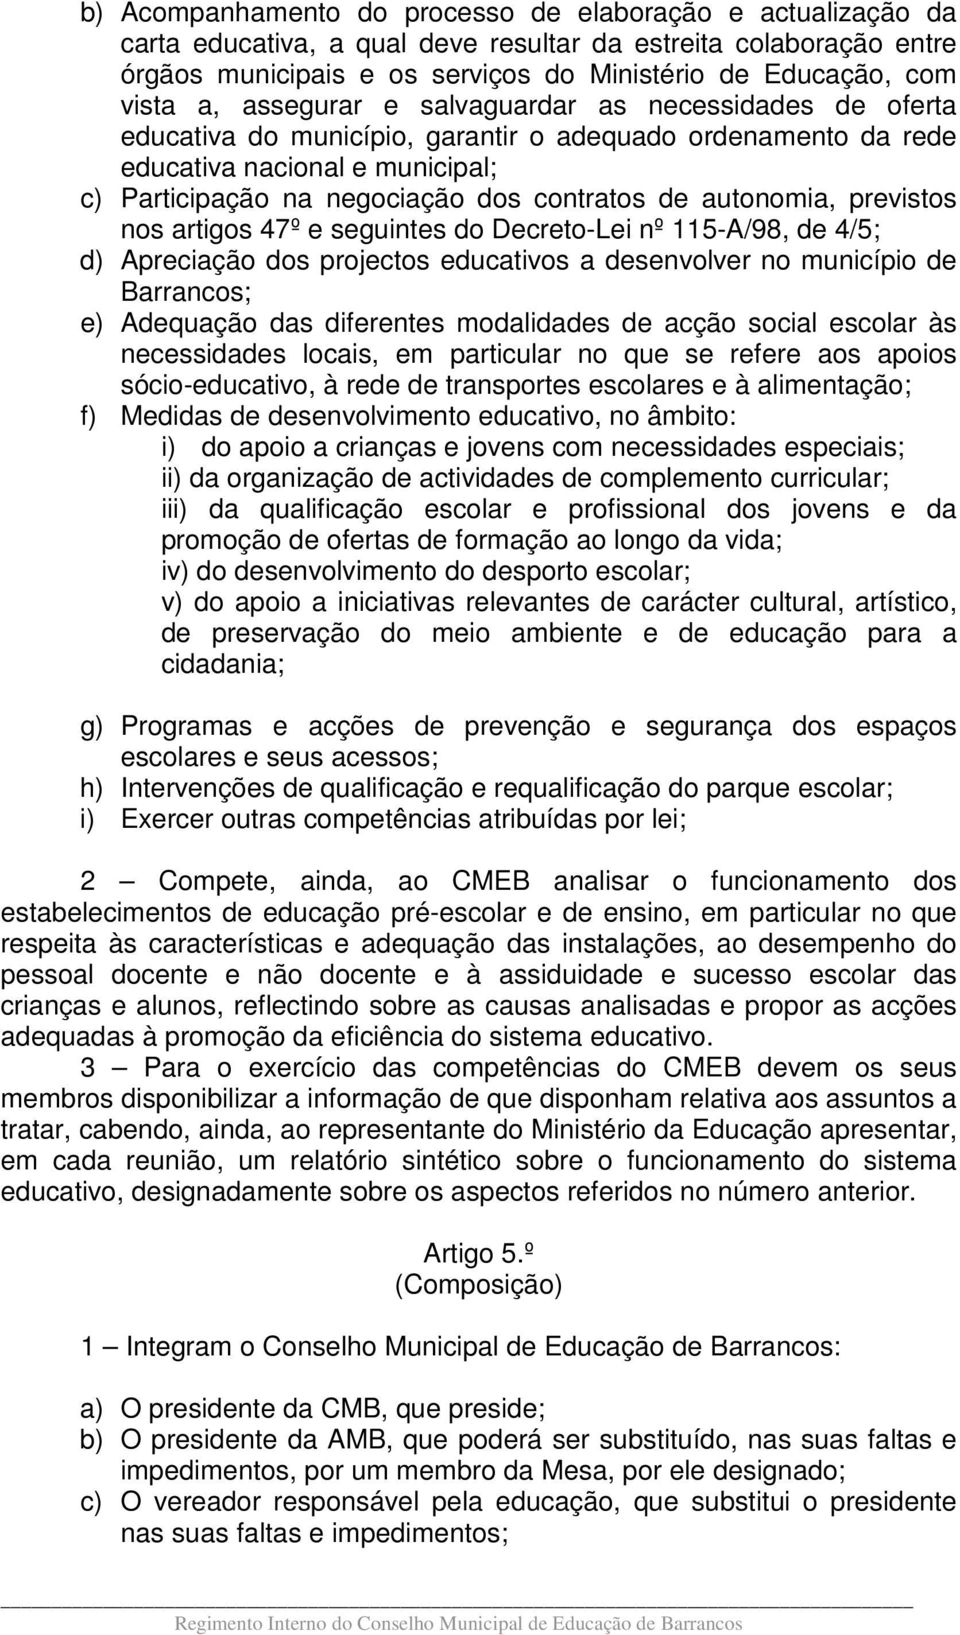 autonomia, previstos nos artigos 47º e seguintes do Decreto-Lei nº 115-A/98, de 4/5; d) Apreciação dos projectos educativos a desenvolver no município de Barrancos; e) Adequação das diferentes